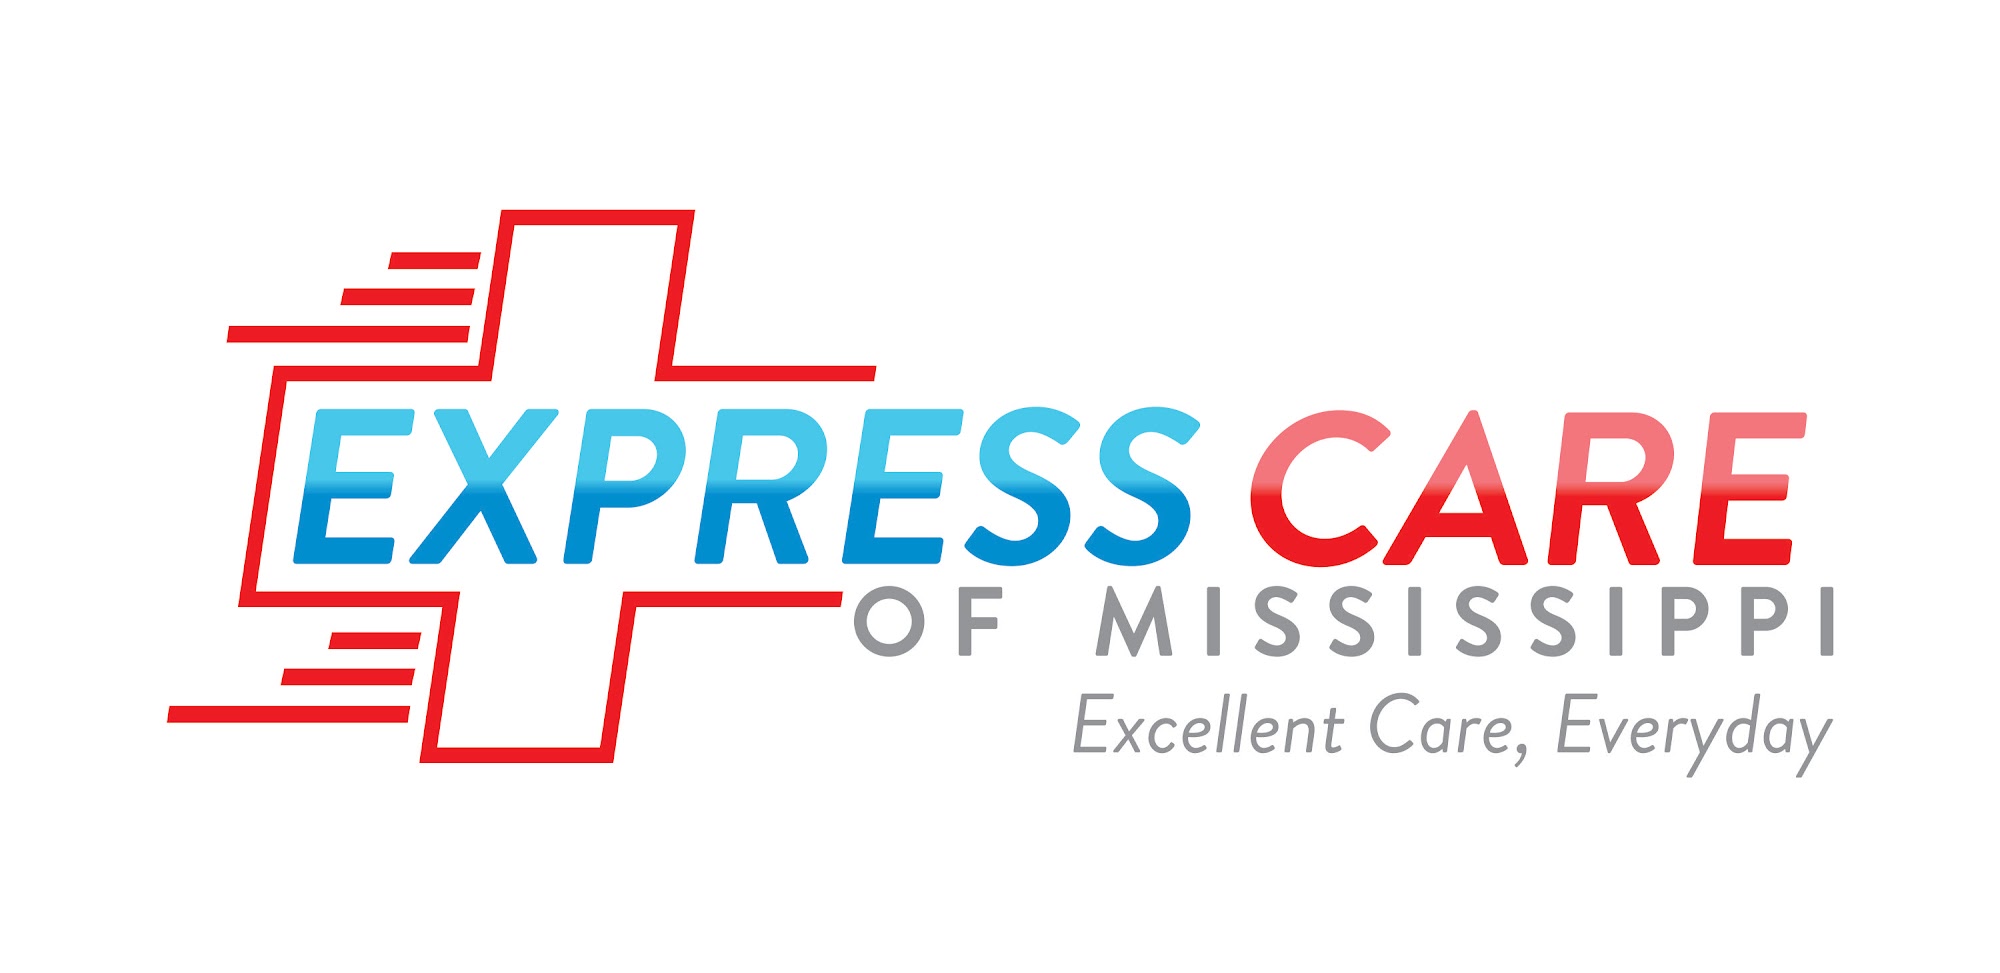 Express Care of Mississippi 609 N Davis Ave Suite 105, Cleveland Mississippi 38732